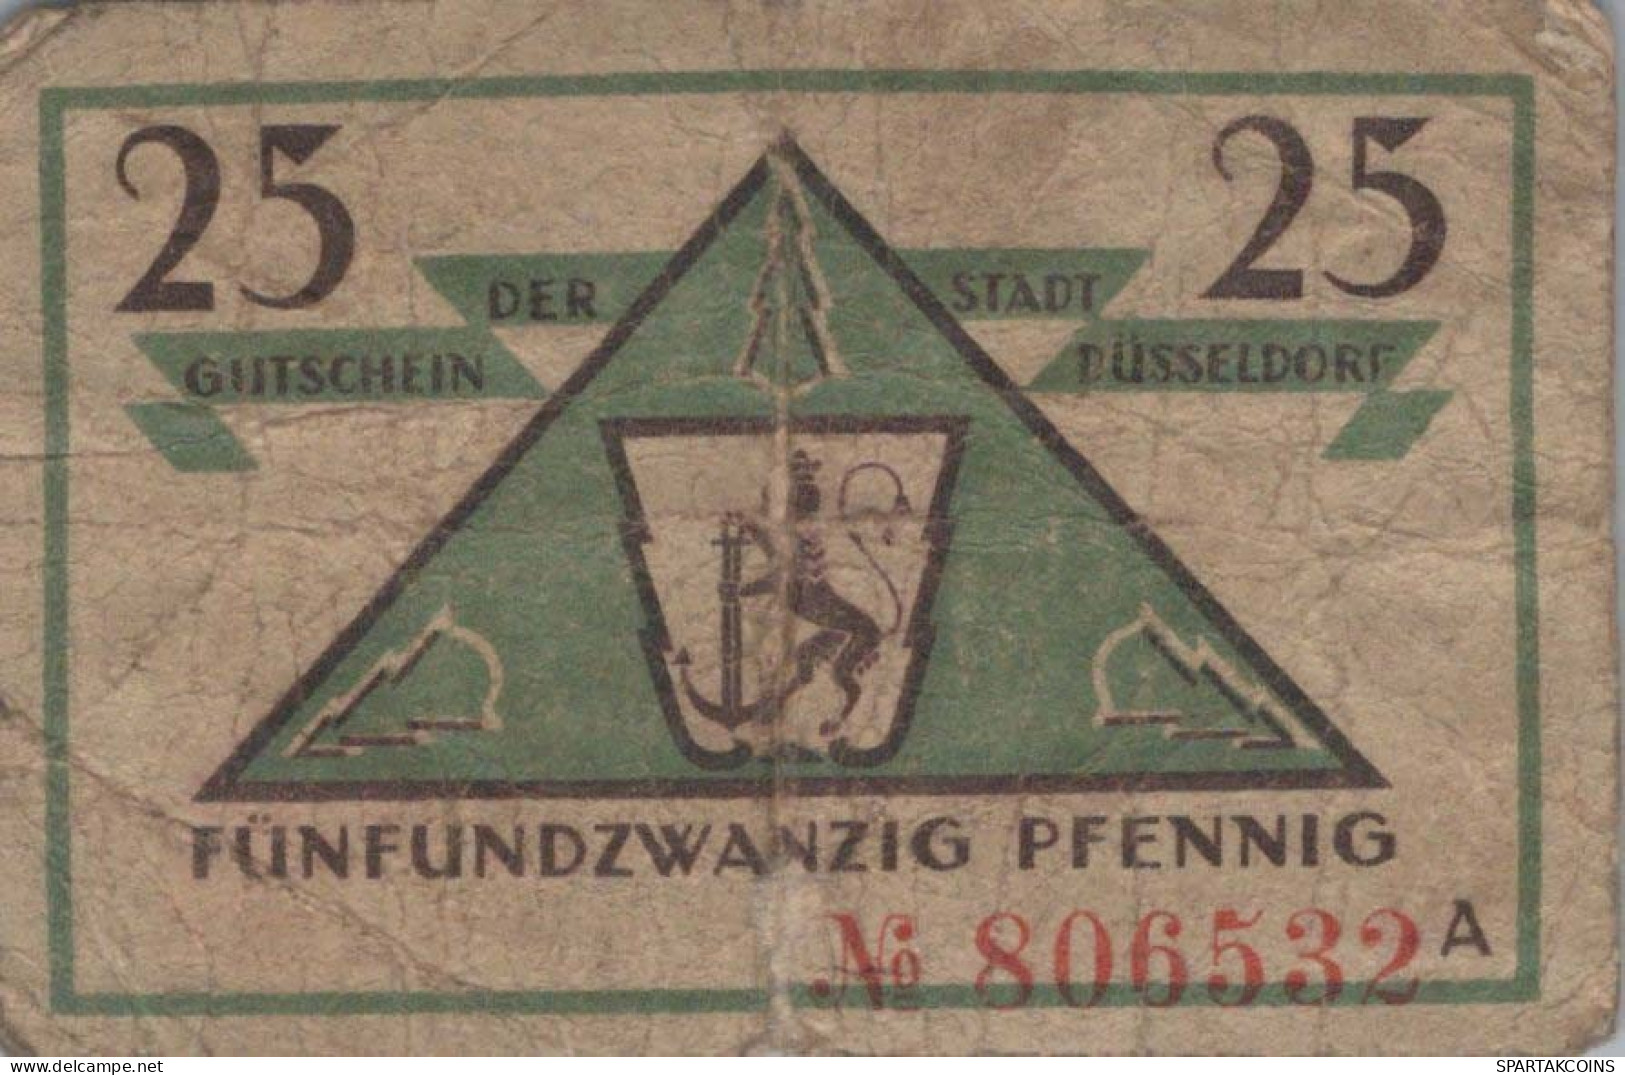 25 PFENNIG 1919 Stadt DÜSSELDORF Rhine DEUTSCHLAND Notgeld Banknote #PG442 - [11] Emisiones Locales